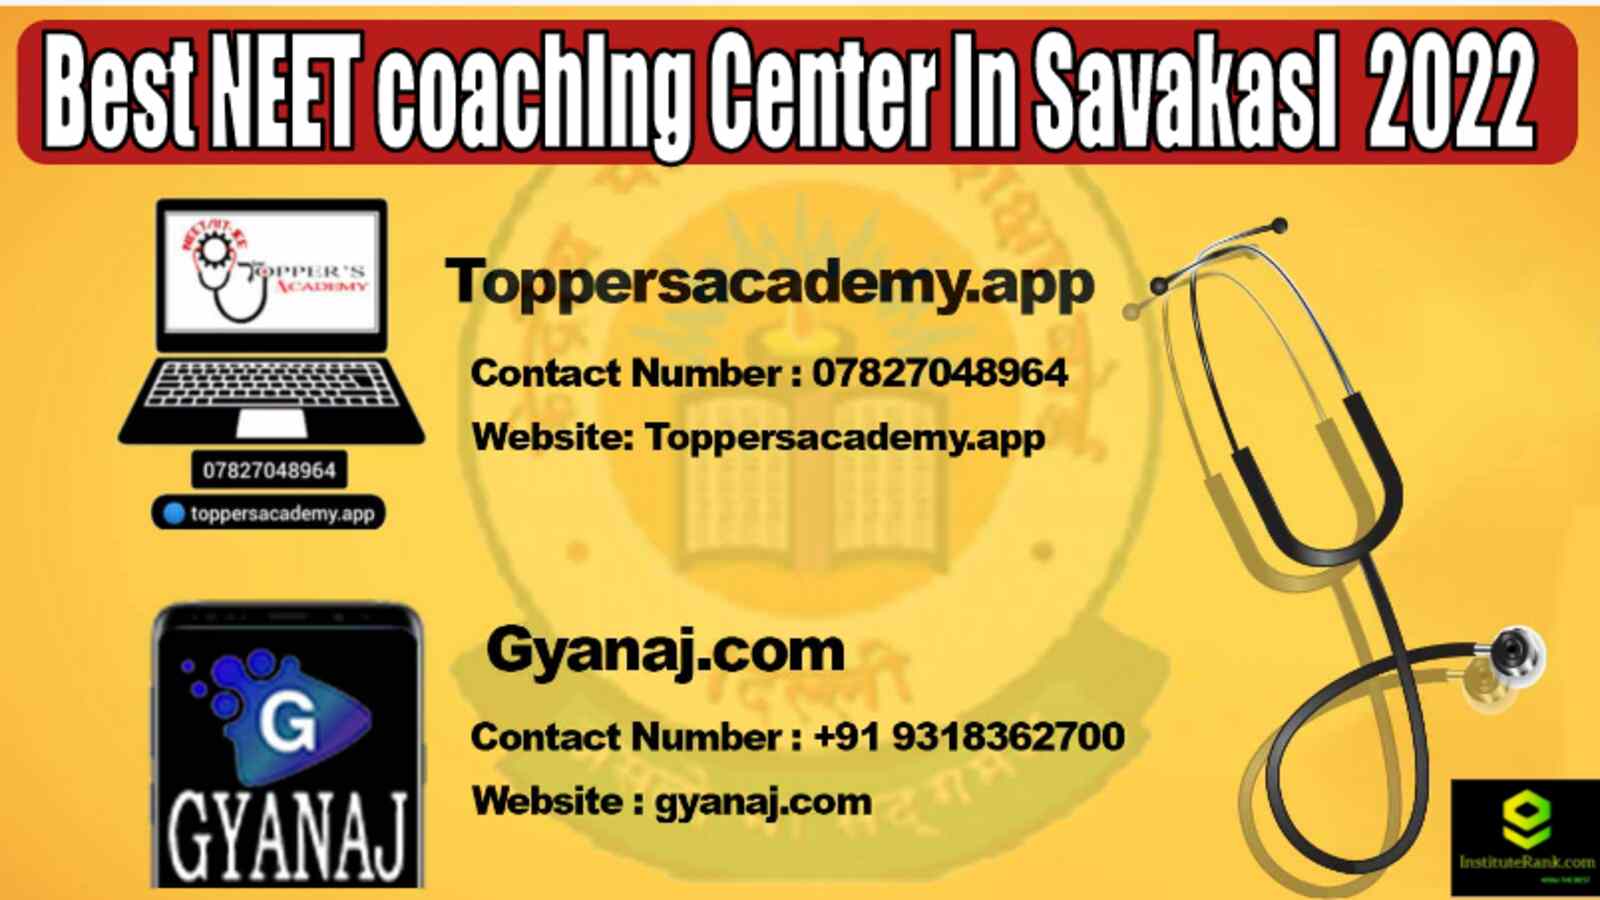 Best Coaching Center In Savakasi